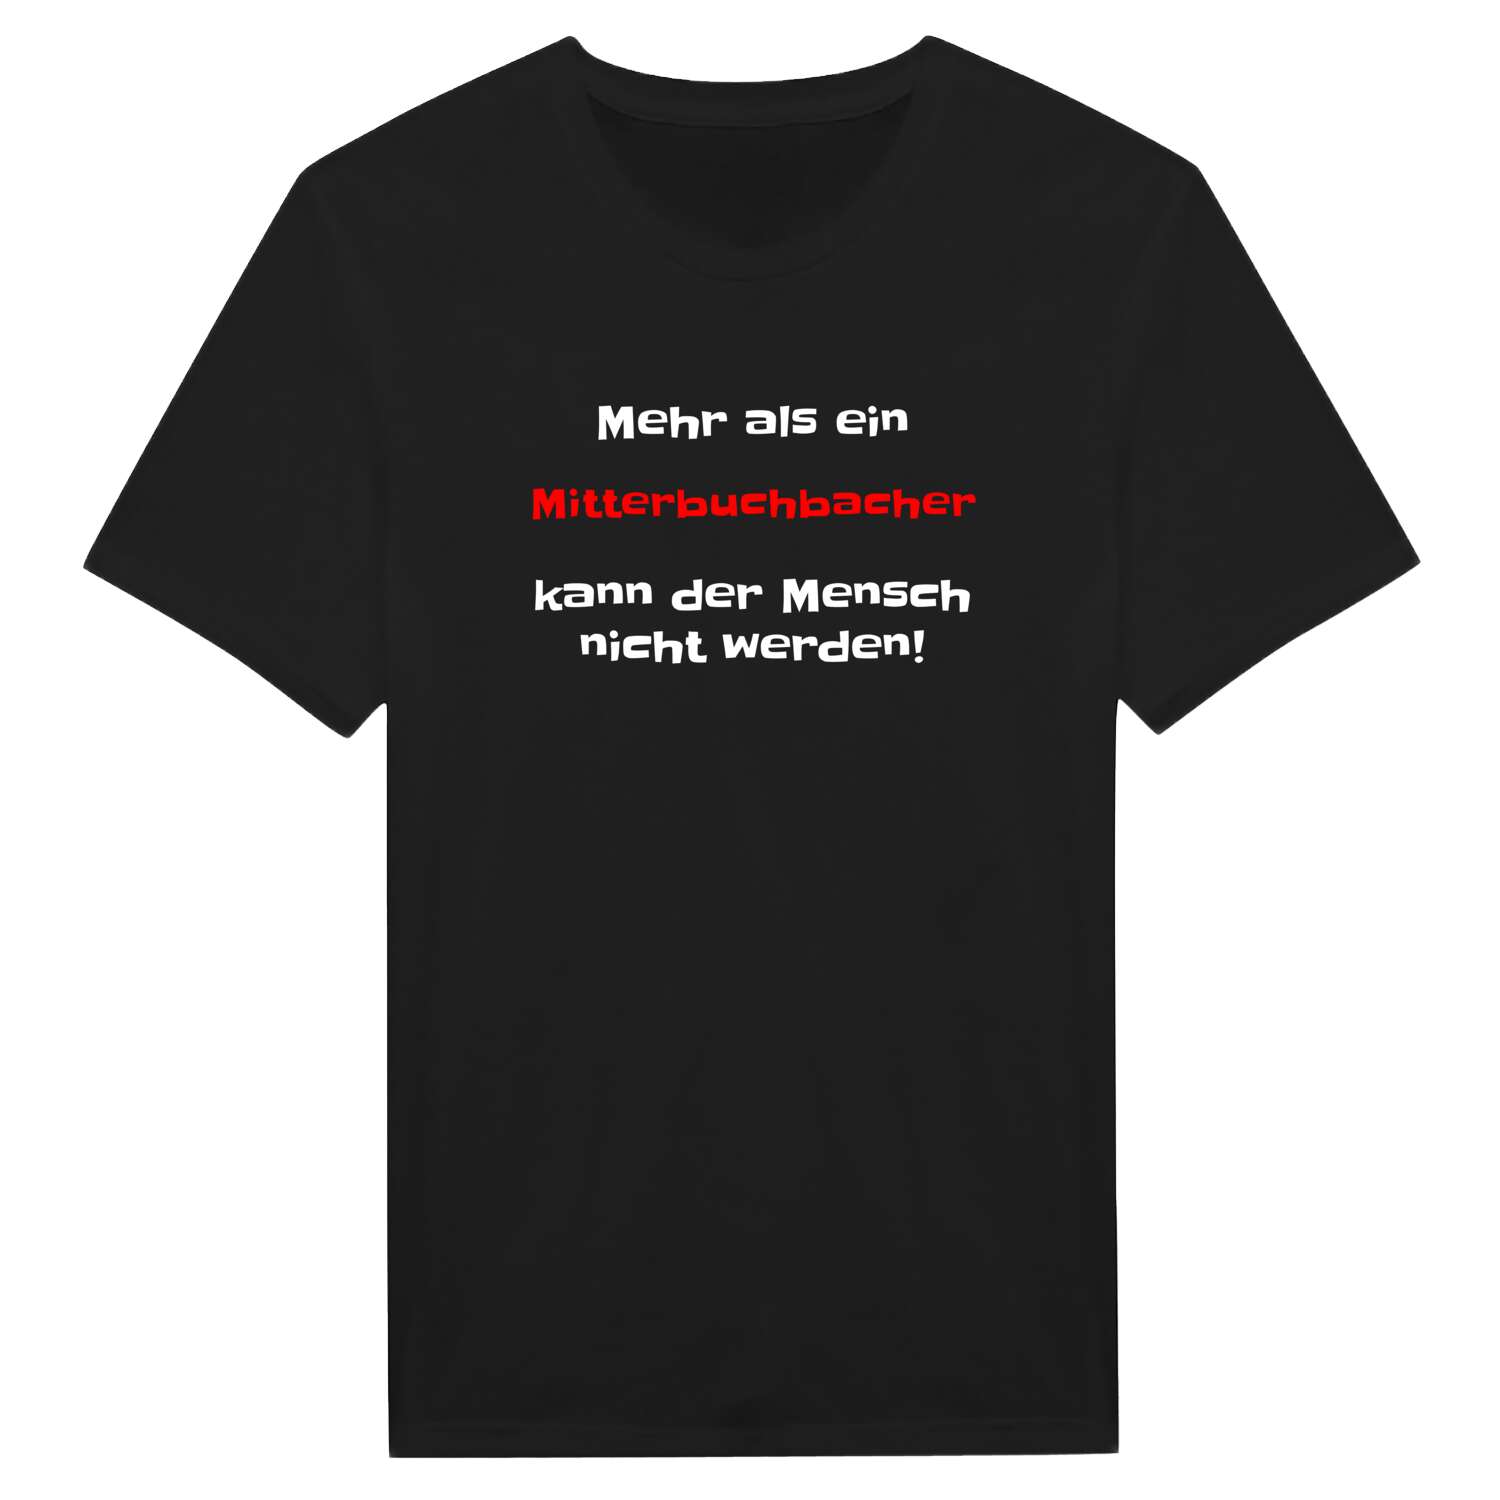 Mitterbuchbach T-Shirt »Mehr als ein«